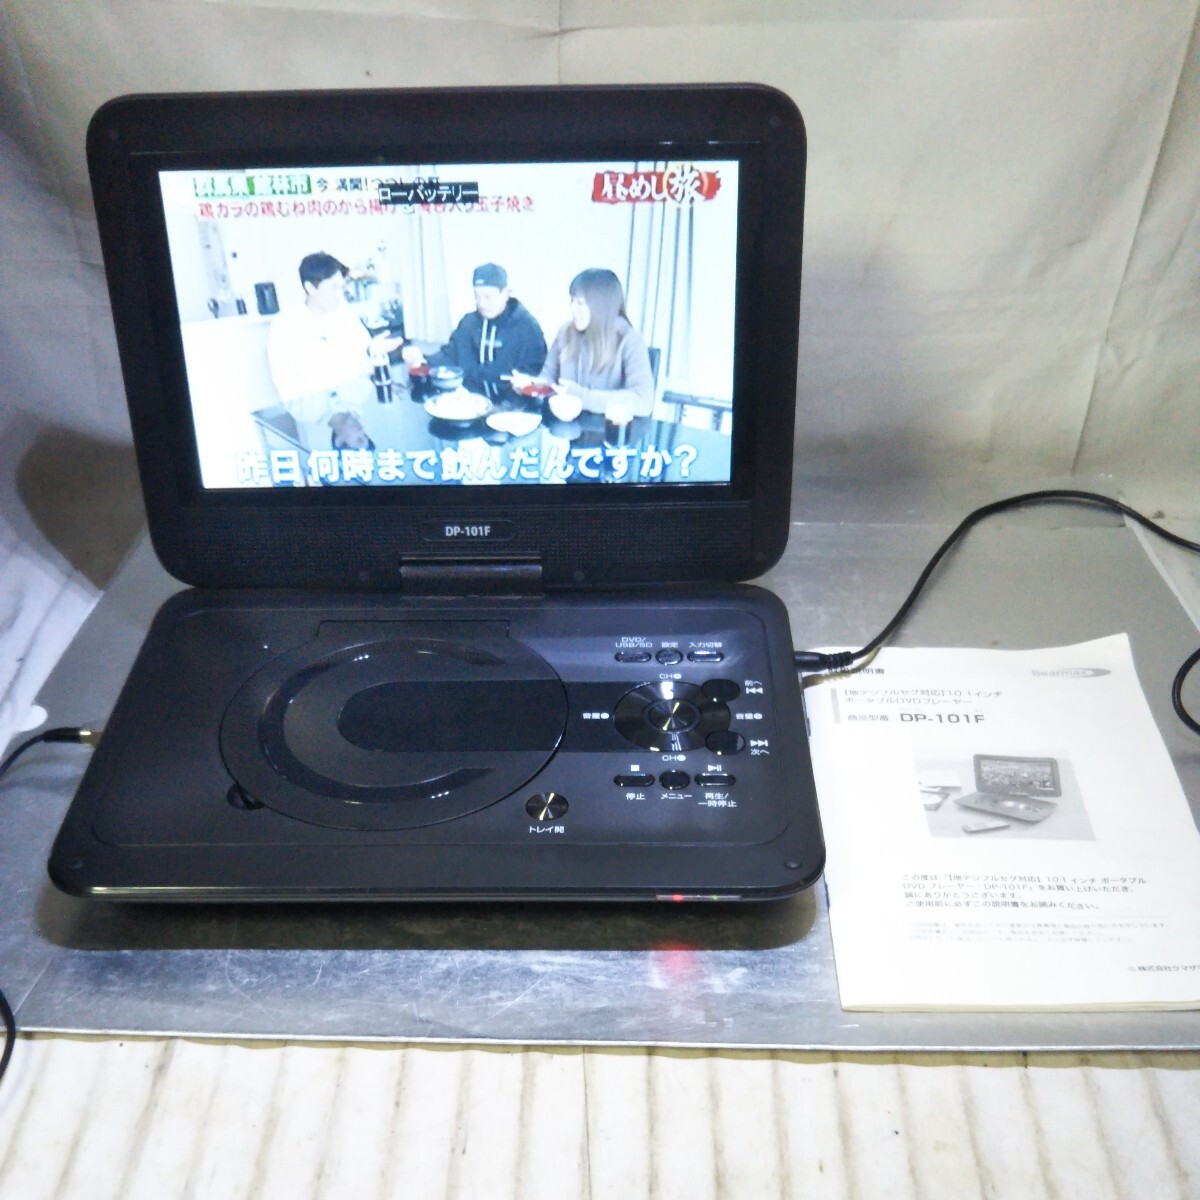  бесплатная доставка (4M990)Bearmax цифровое радиовещание портативный DVD плеер DP-101F